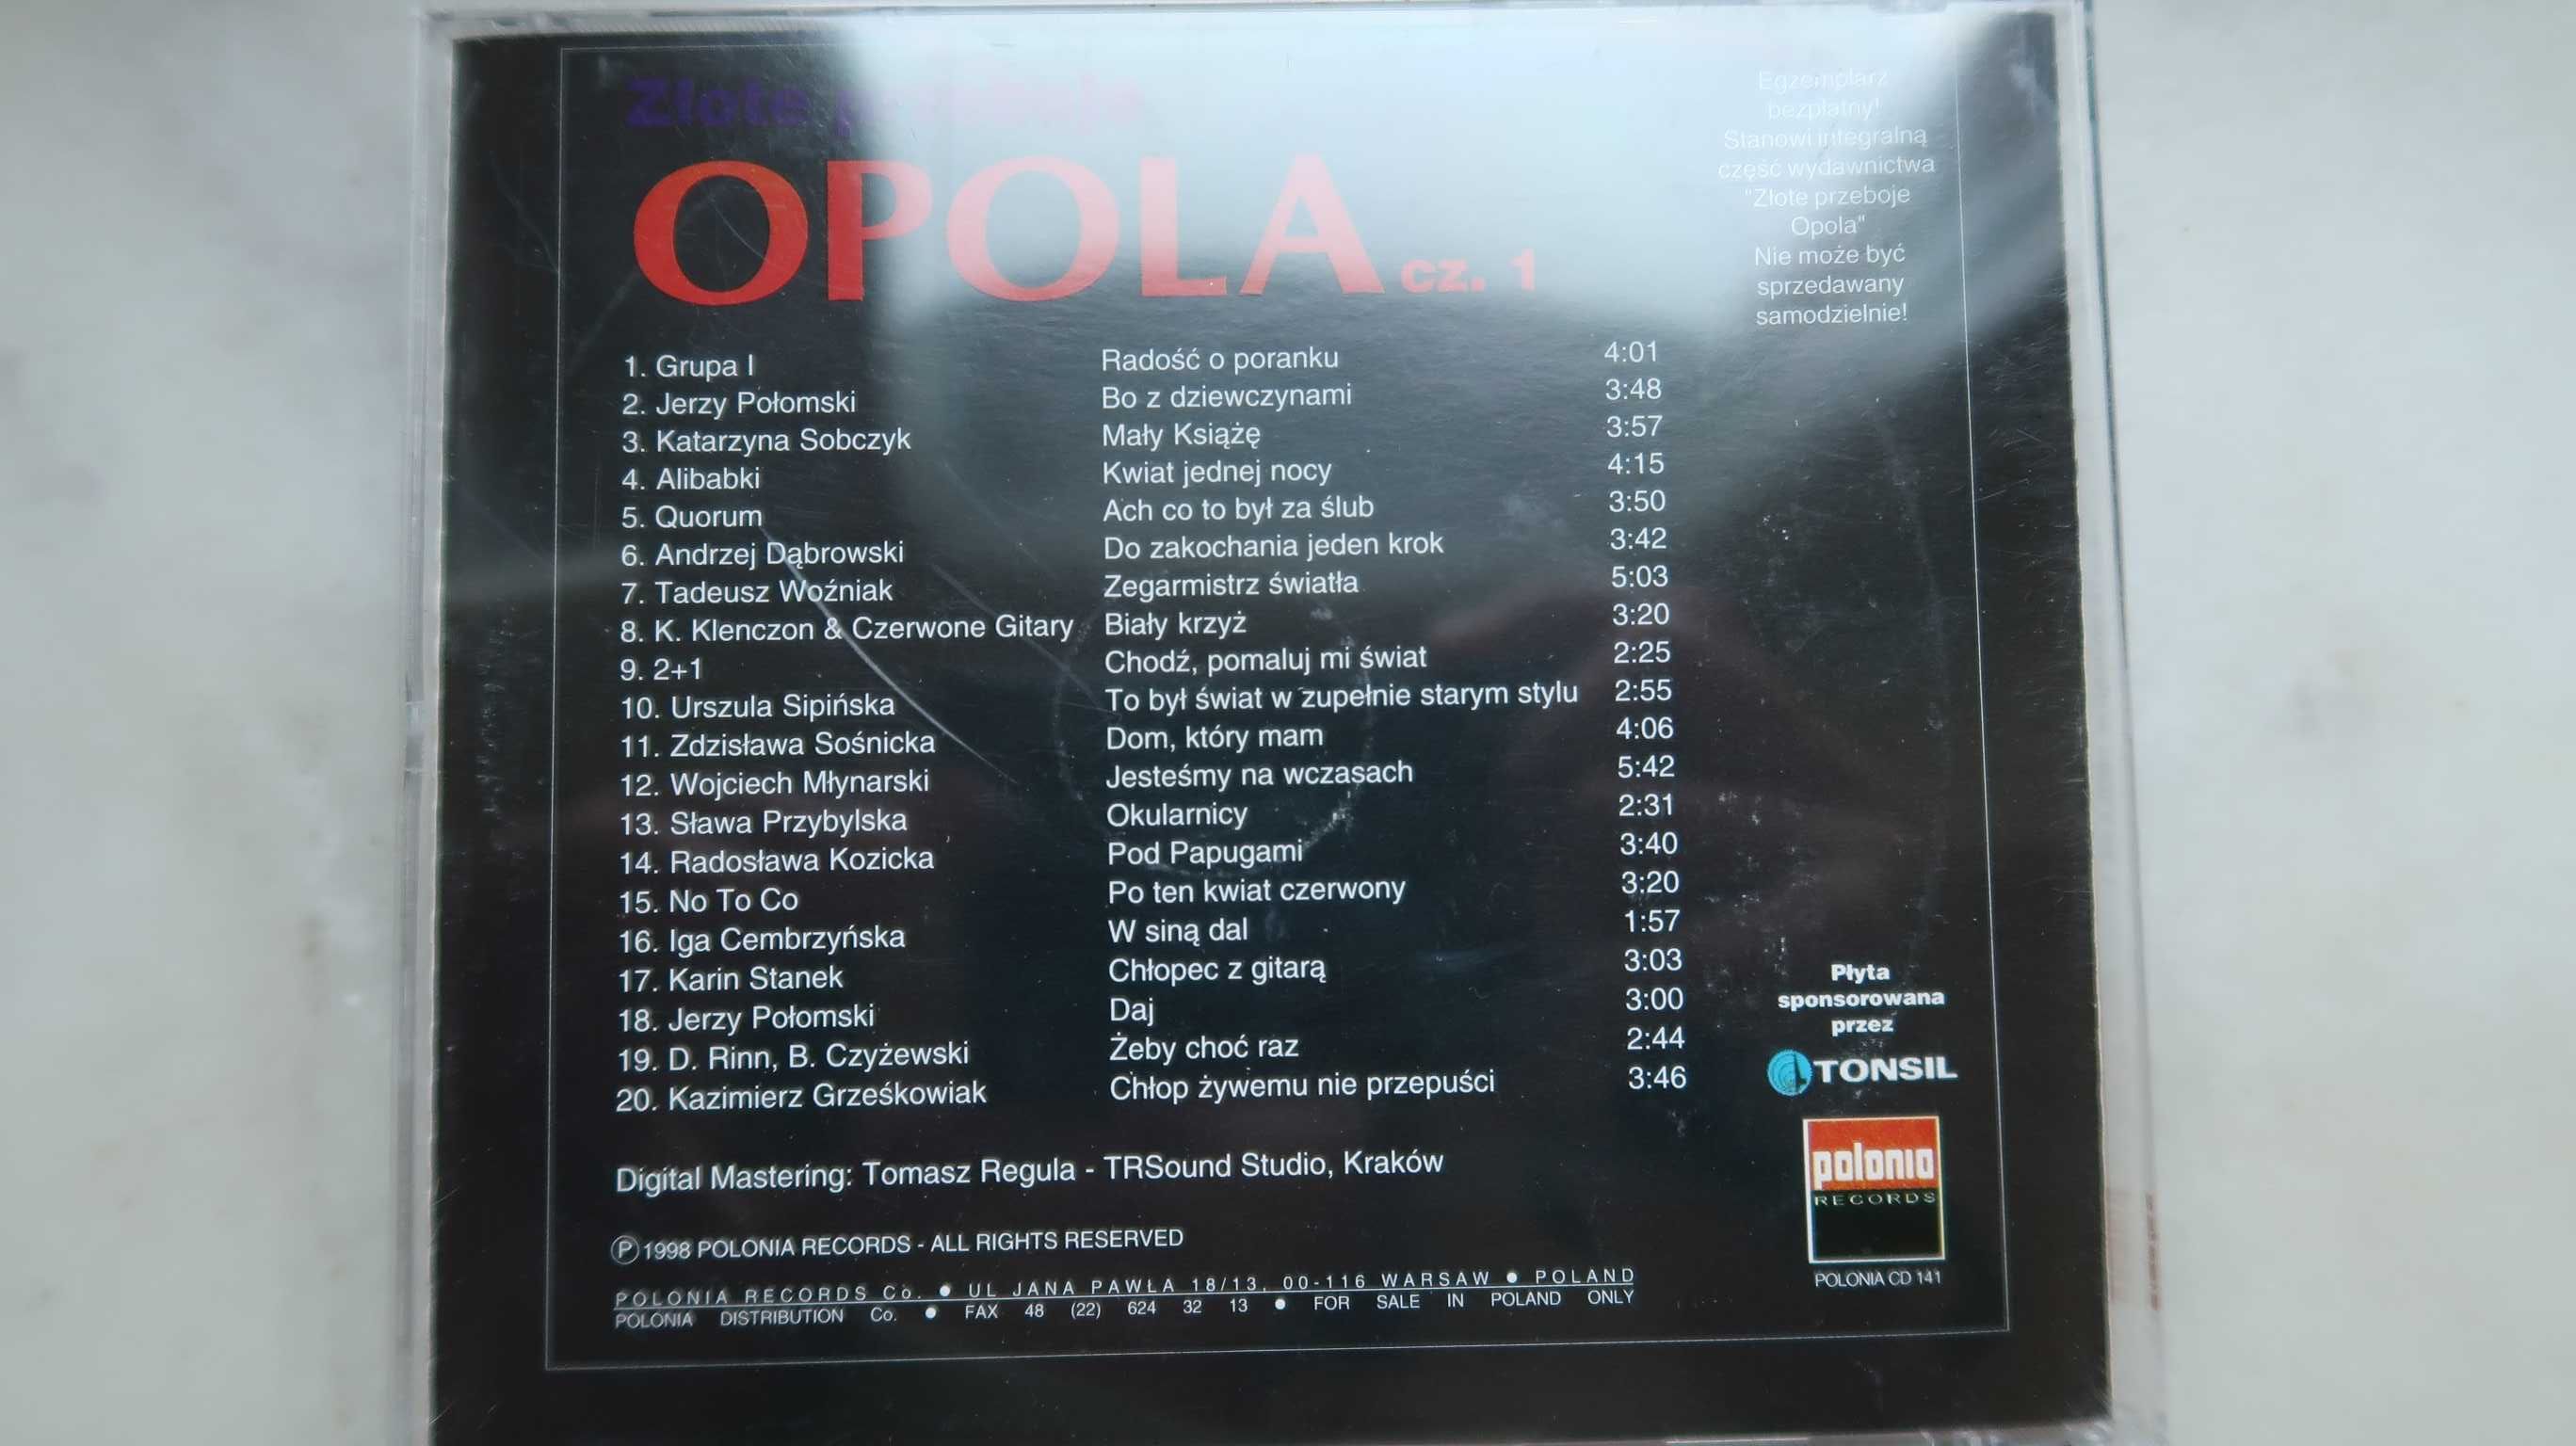 Złote przeboje Opola cz.1 płyta Czerwone Gitary Alibabki